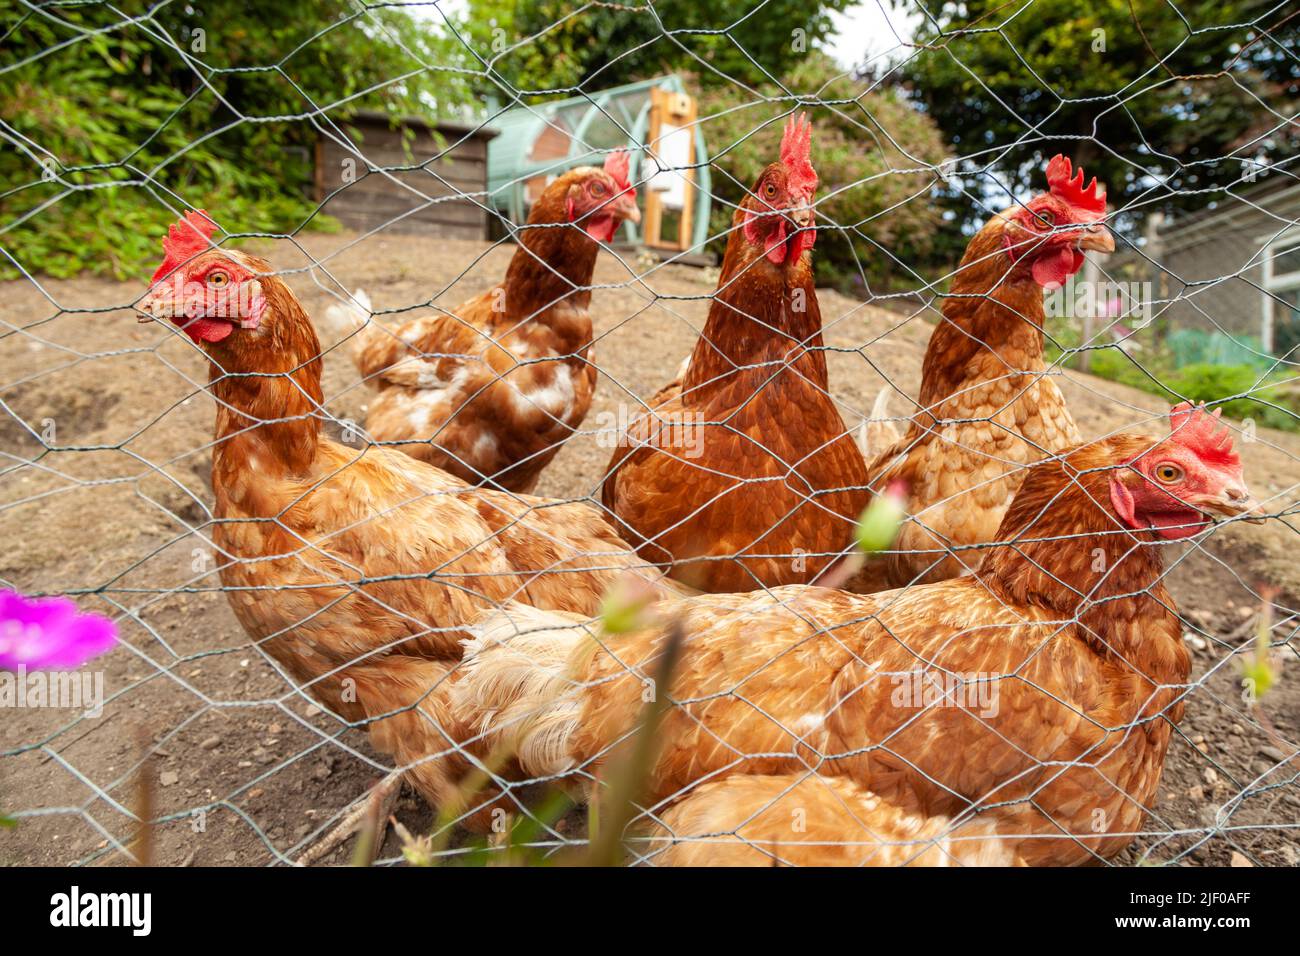 Un grupo de pollos de pie fuera detrás de una valla de alambre Foto de stock